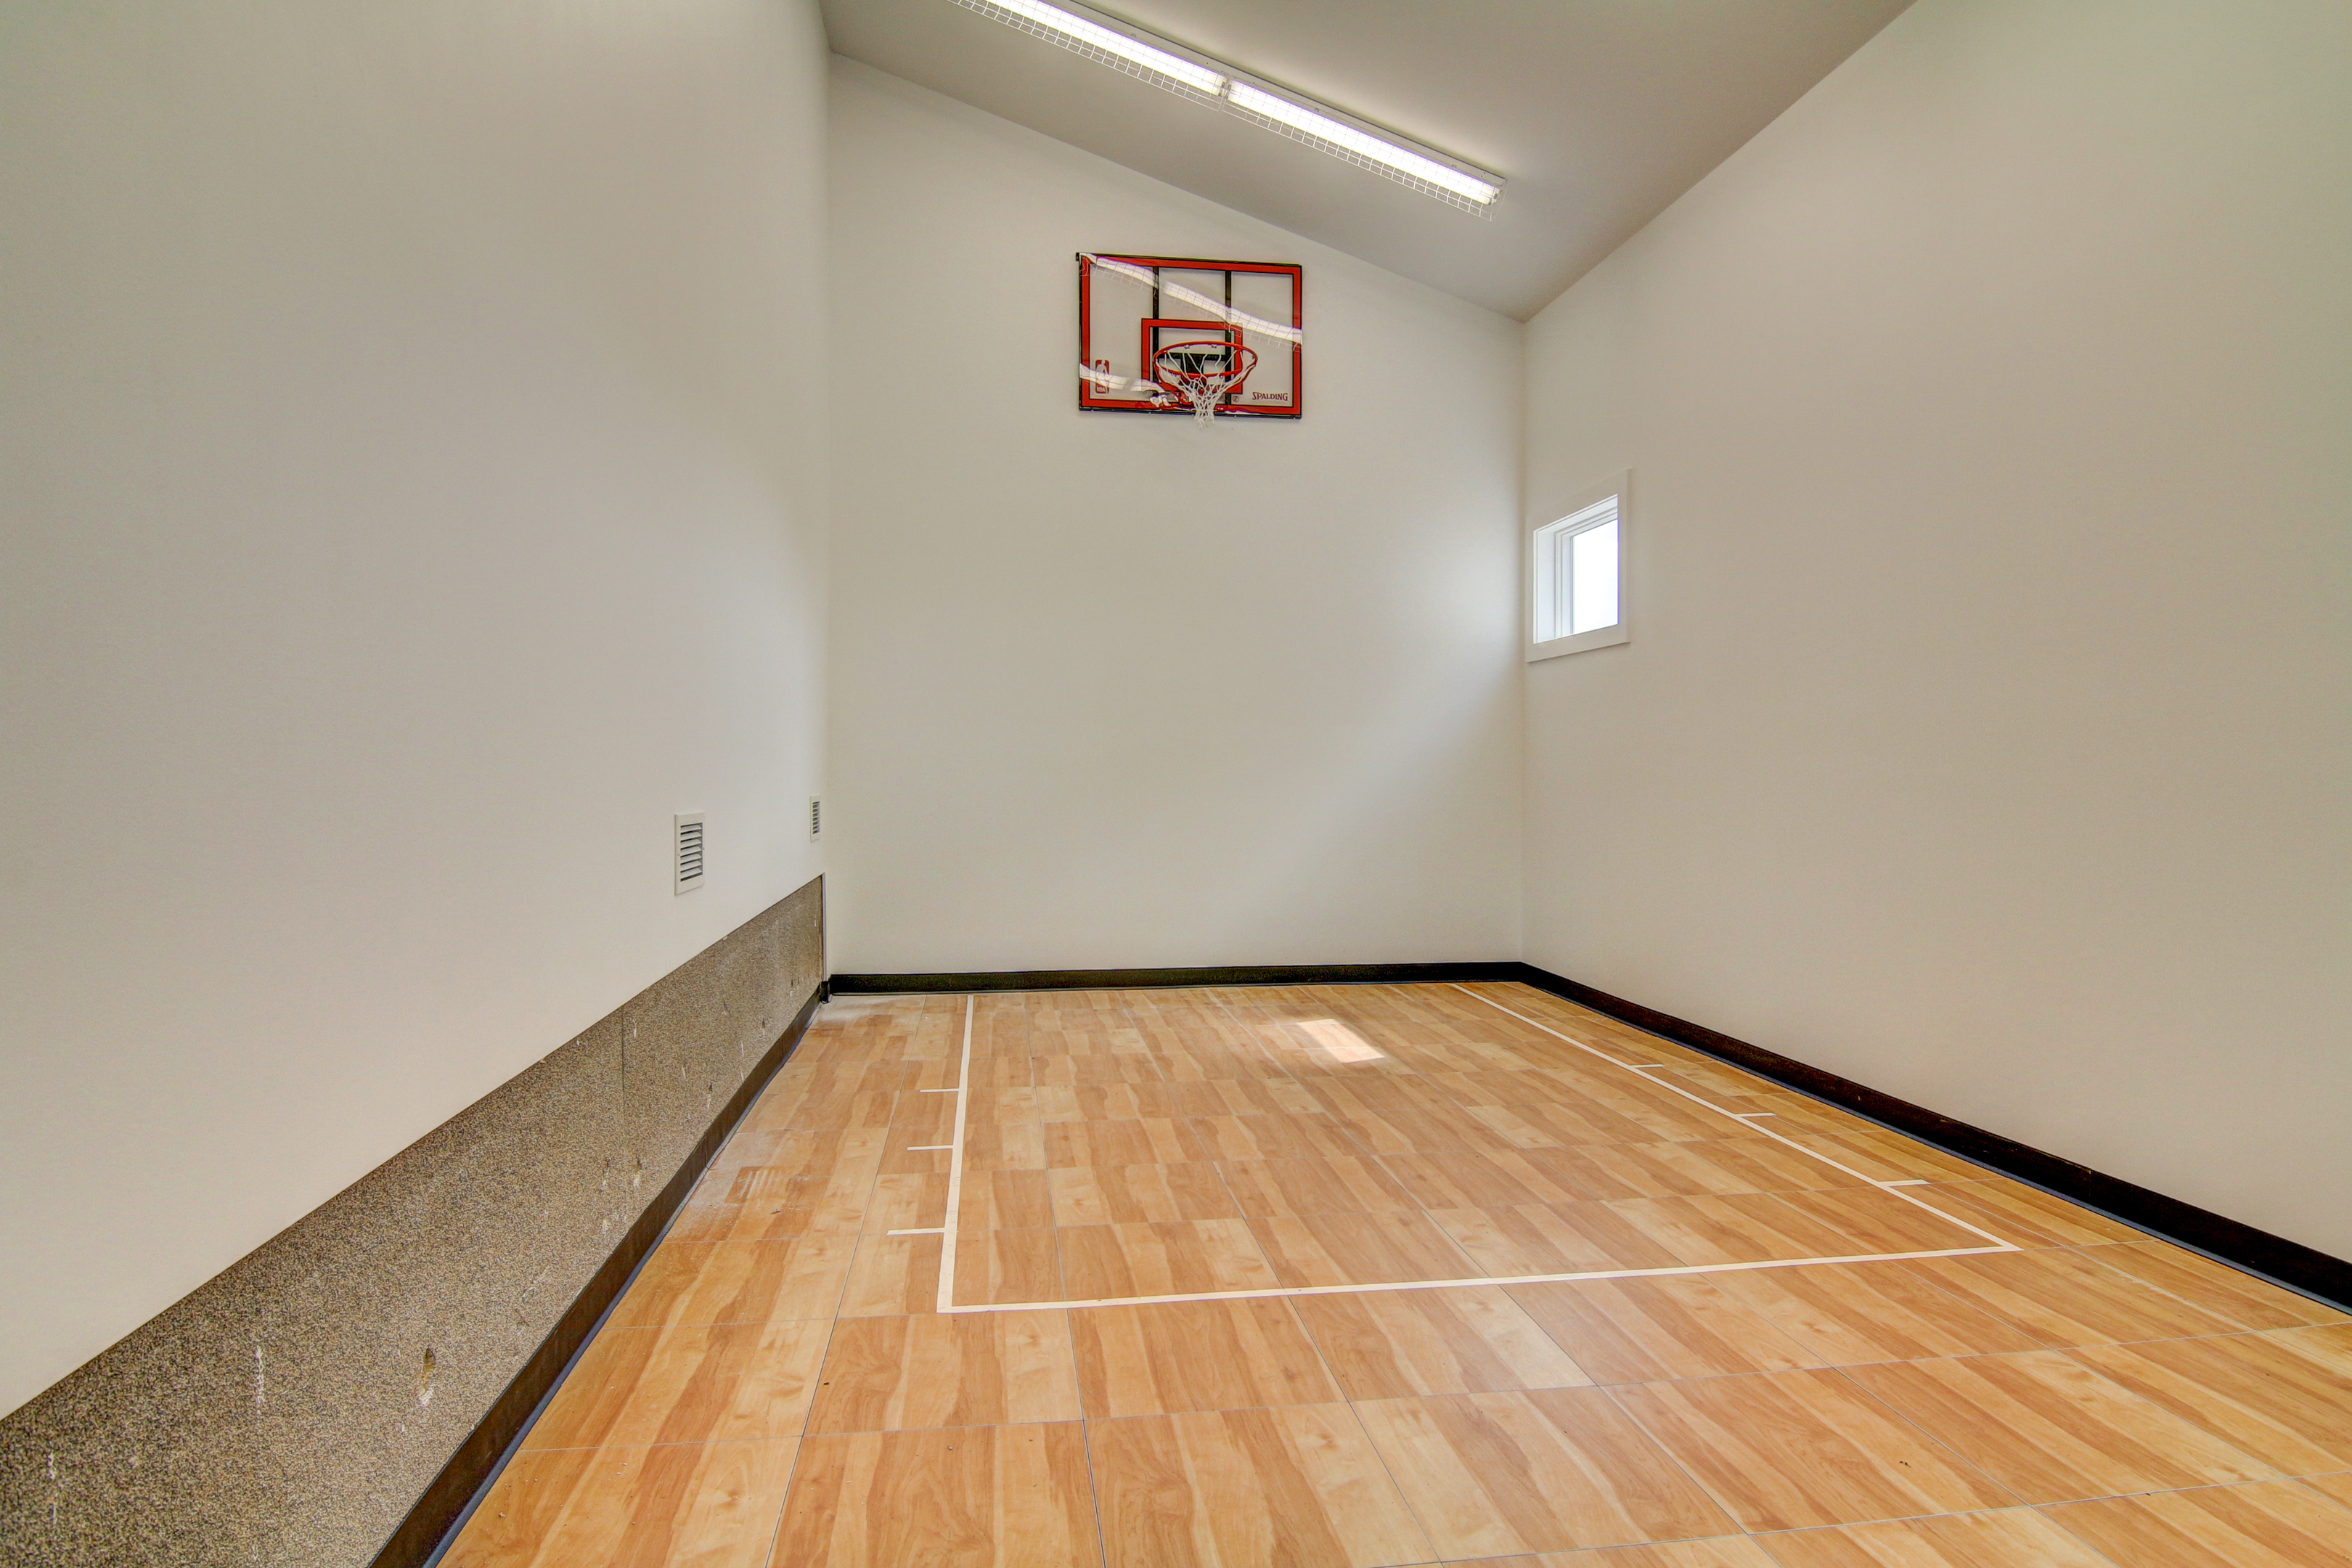 Indoor Sports Room®